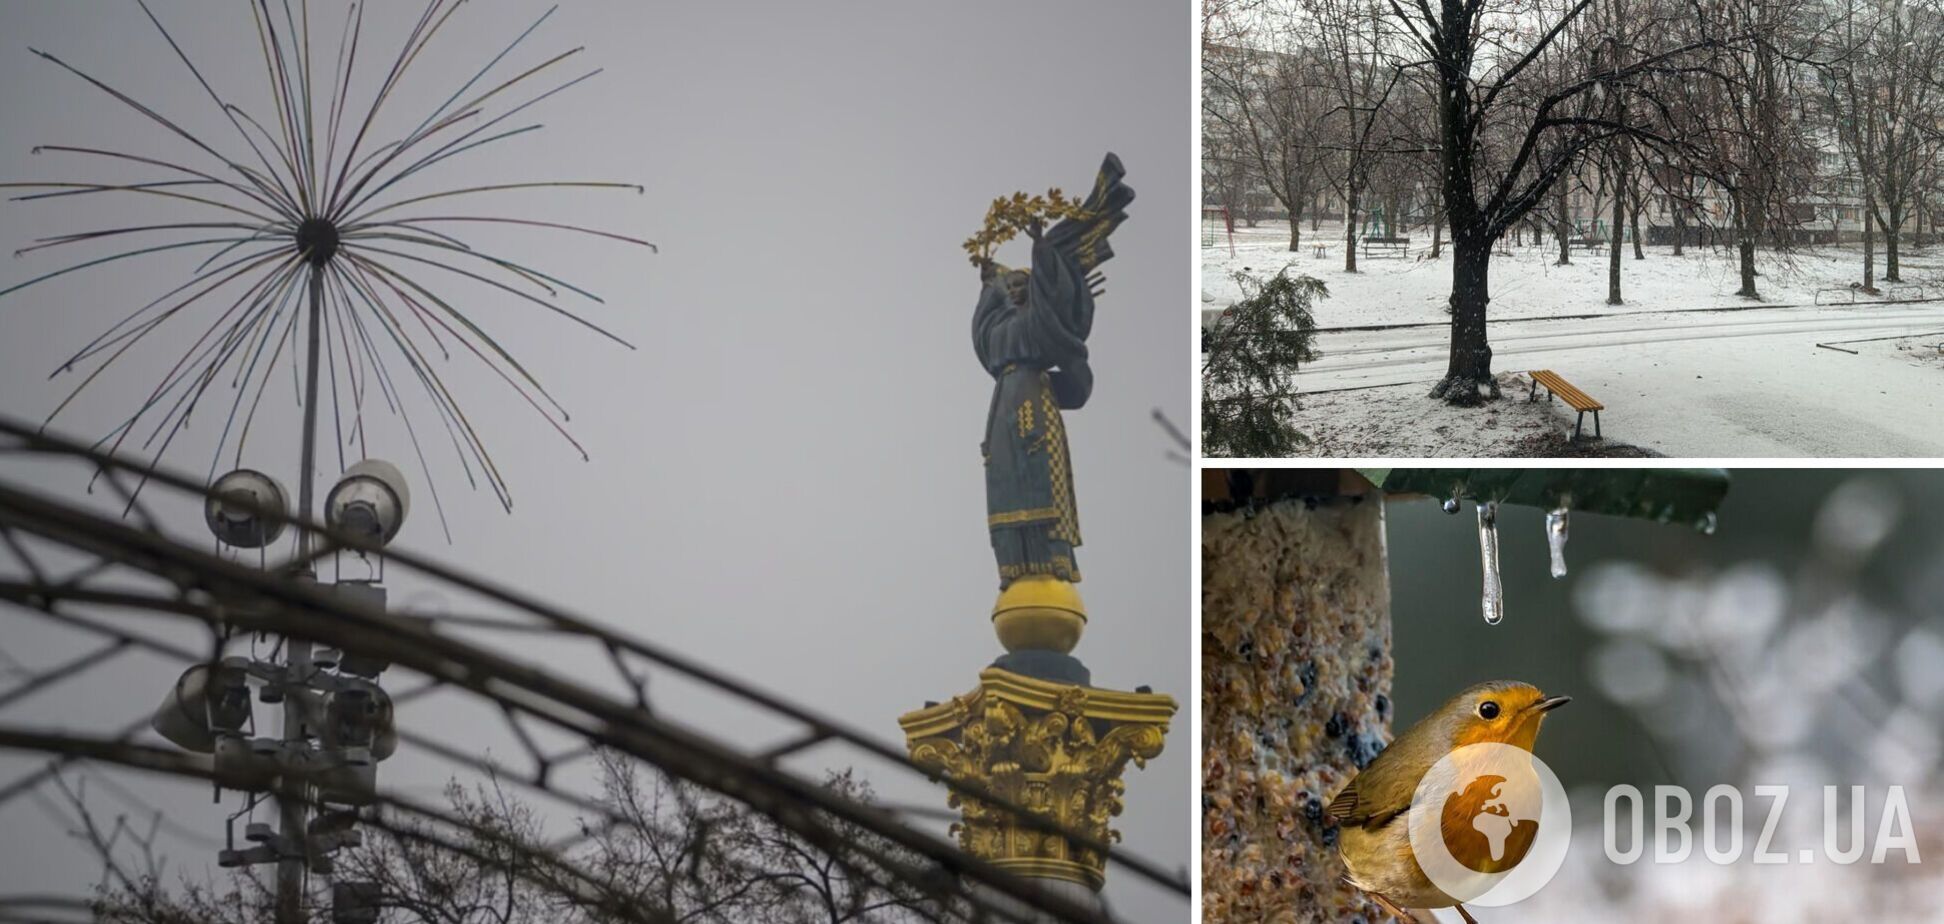 Дощі, мокрий сніг і не лише: українців попередили про кепську погоду 11 лютого, оголошено І рівень небезпеки
